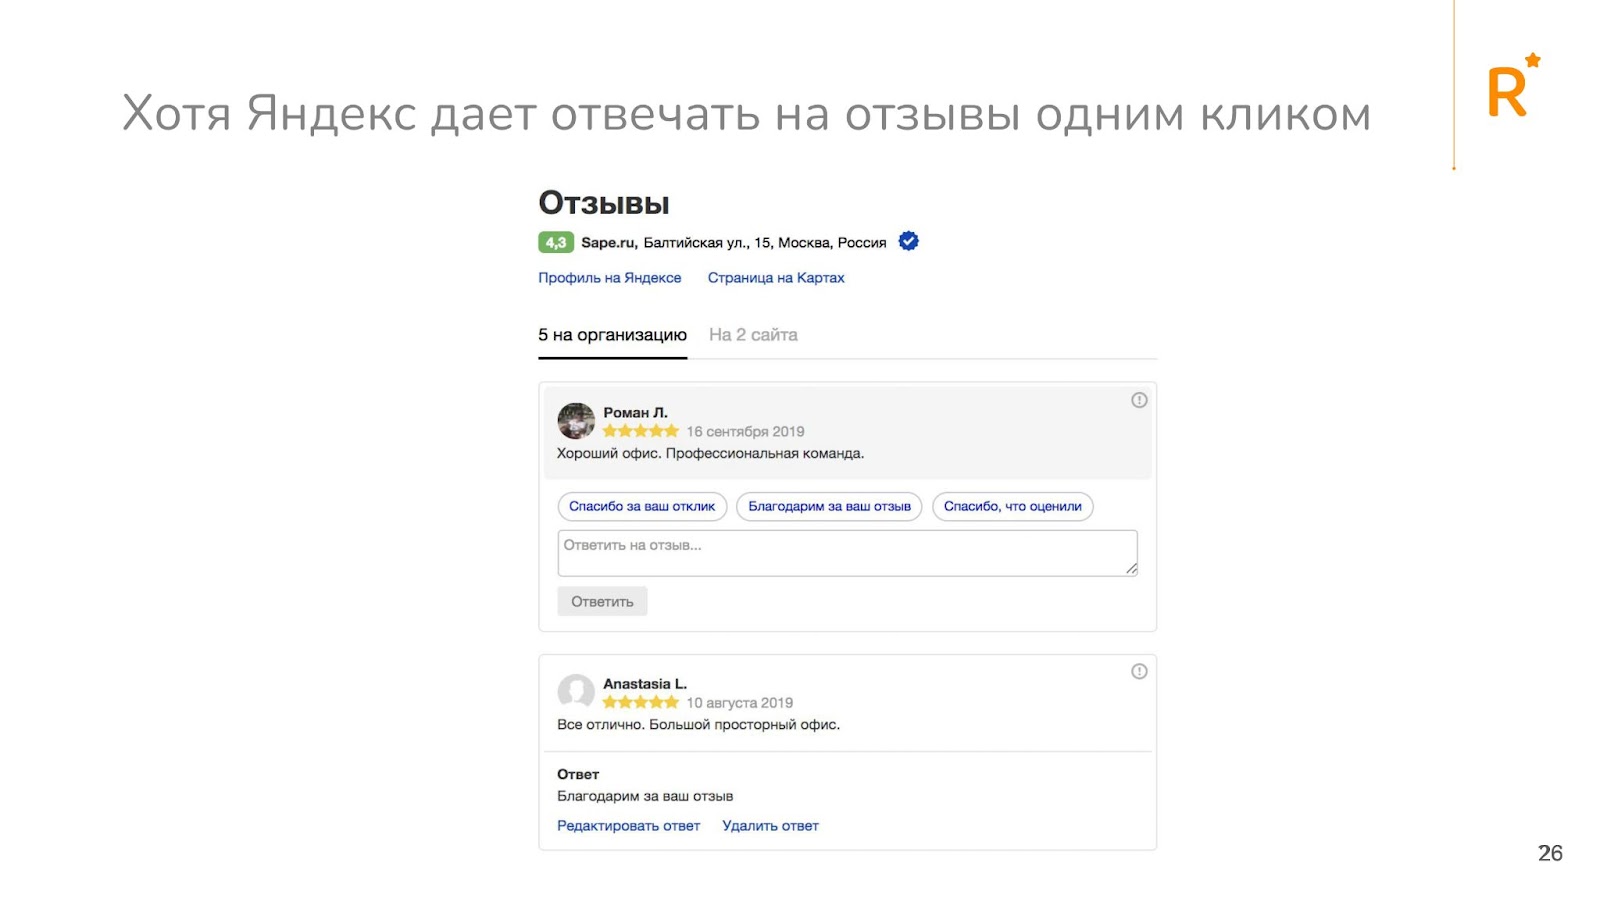 "Яндекс" позволяет отвечать на отзывы одним кликом